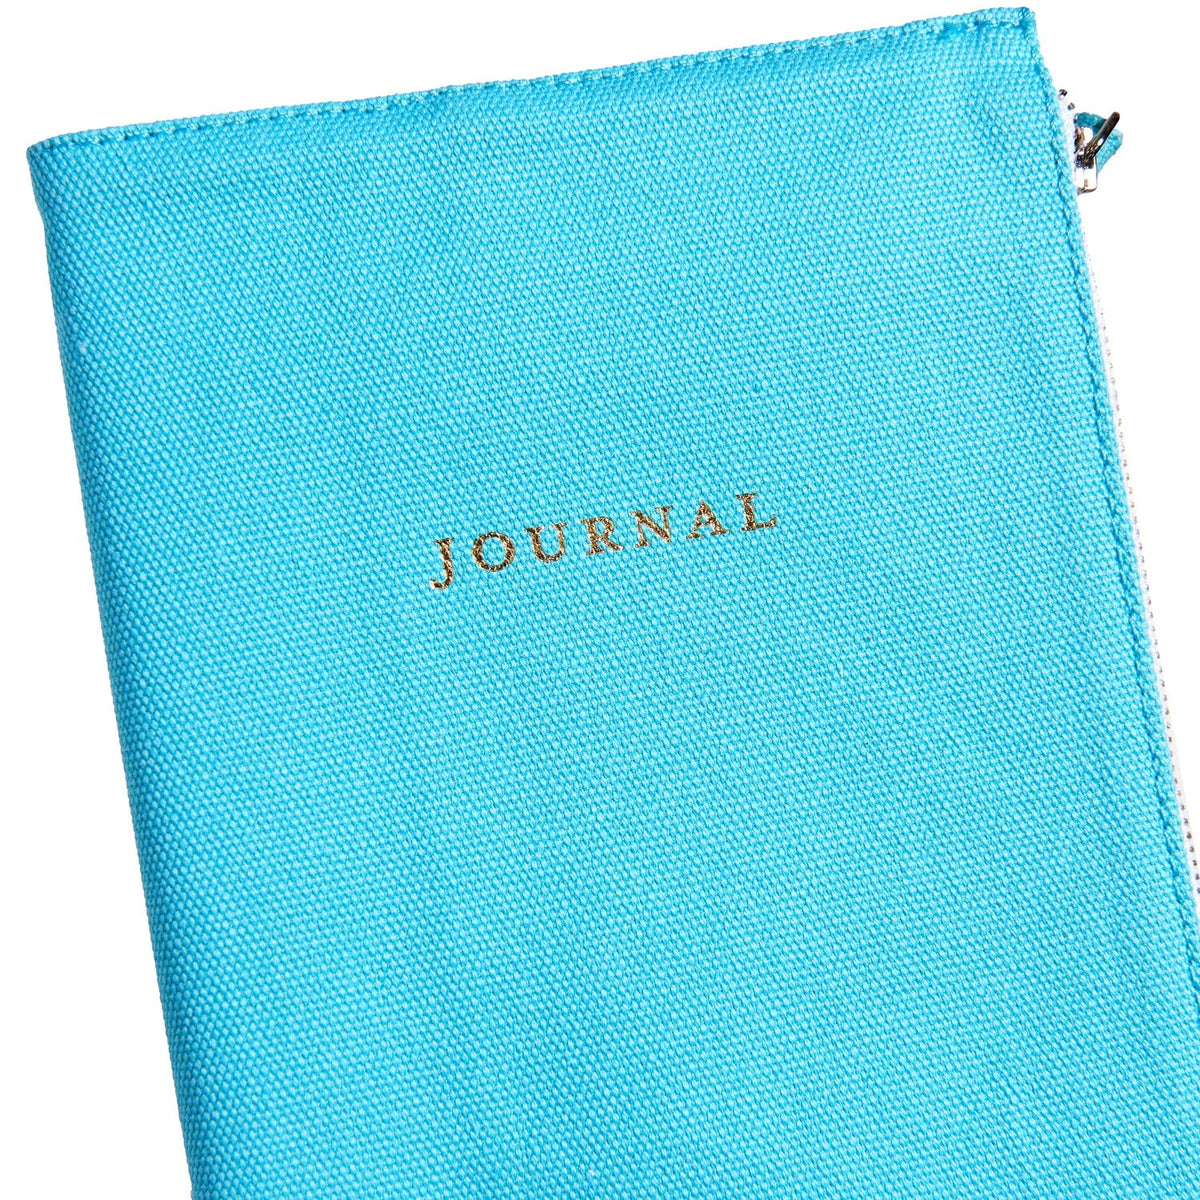 Teal Fabric Pouch Journal Gartner Studios Notebooks 49474